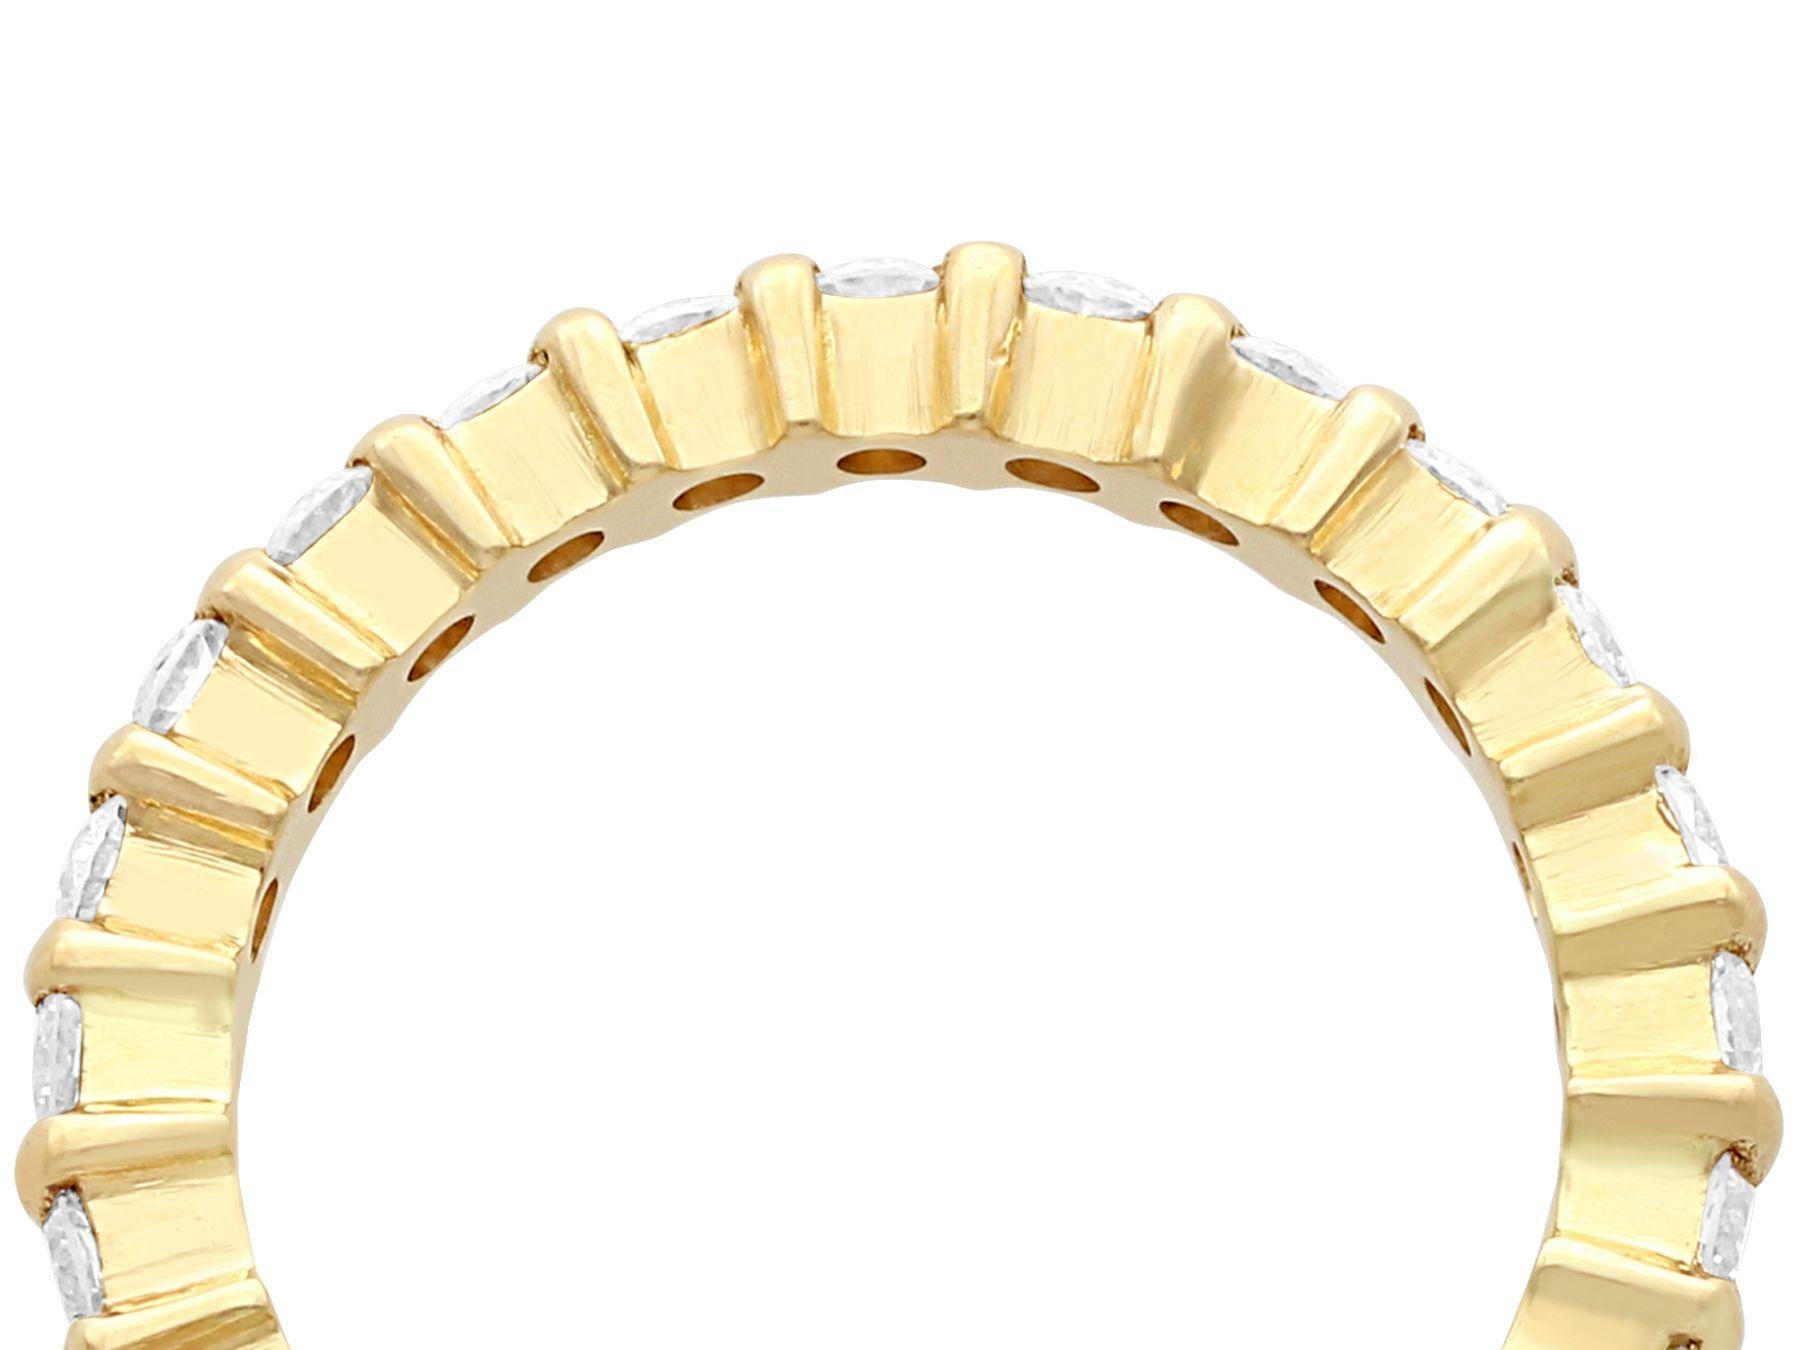 Une impressionnante bague d'éternité contemporaine en or jaune 18 carats et diamant de 0,87 carat, qui fait partie de nos collections de bijoux en diamant.

Cette bague d'éternité en or jaune 18 carats, fine et impressionnante, est ornée d'un